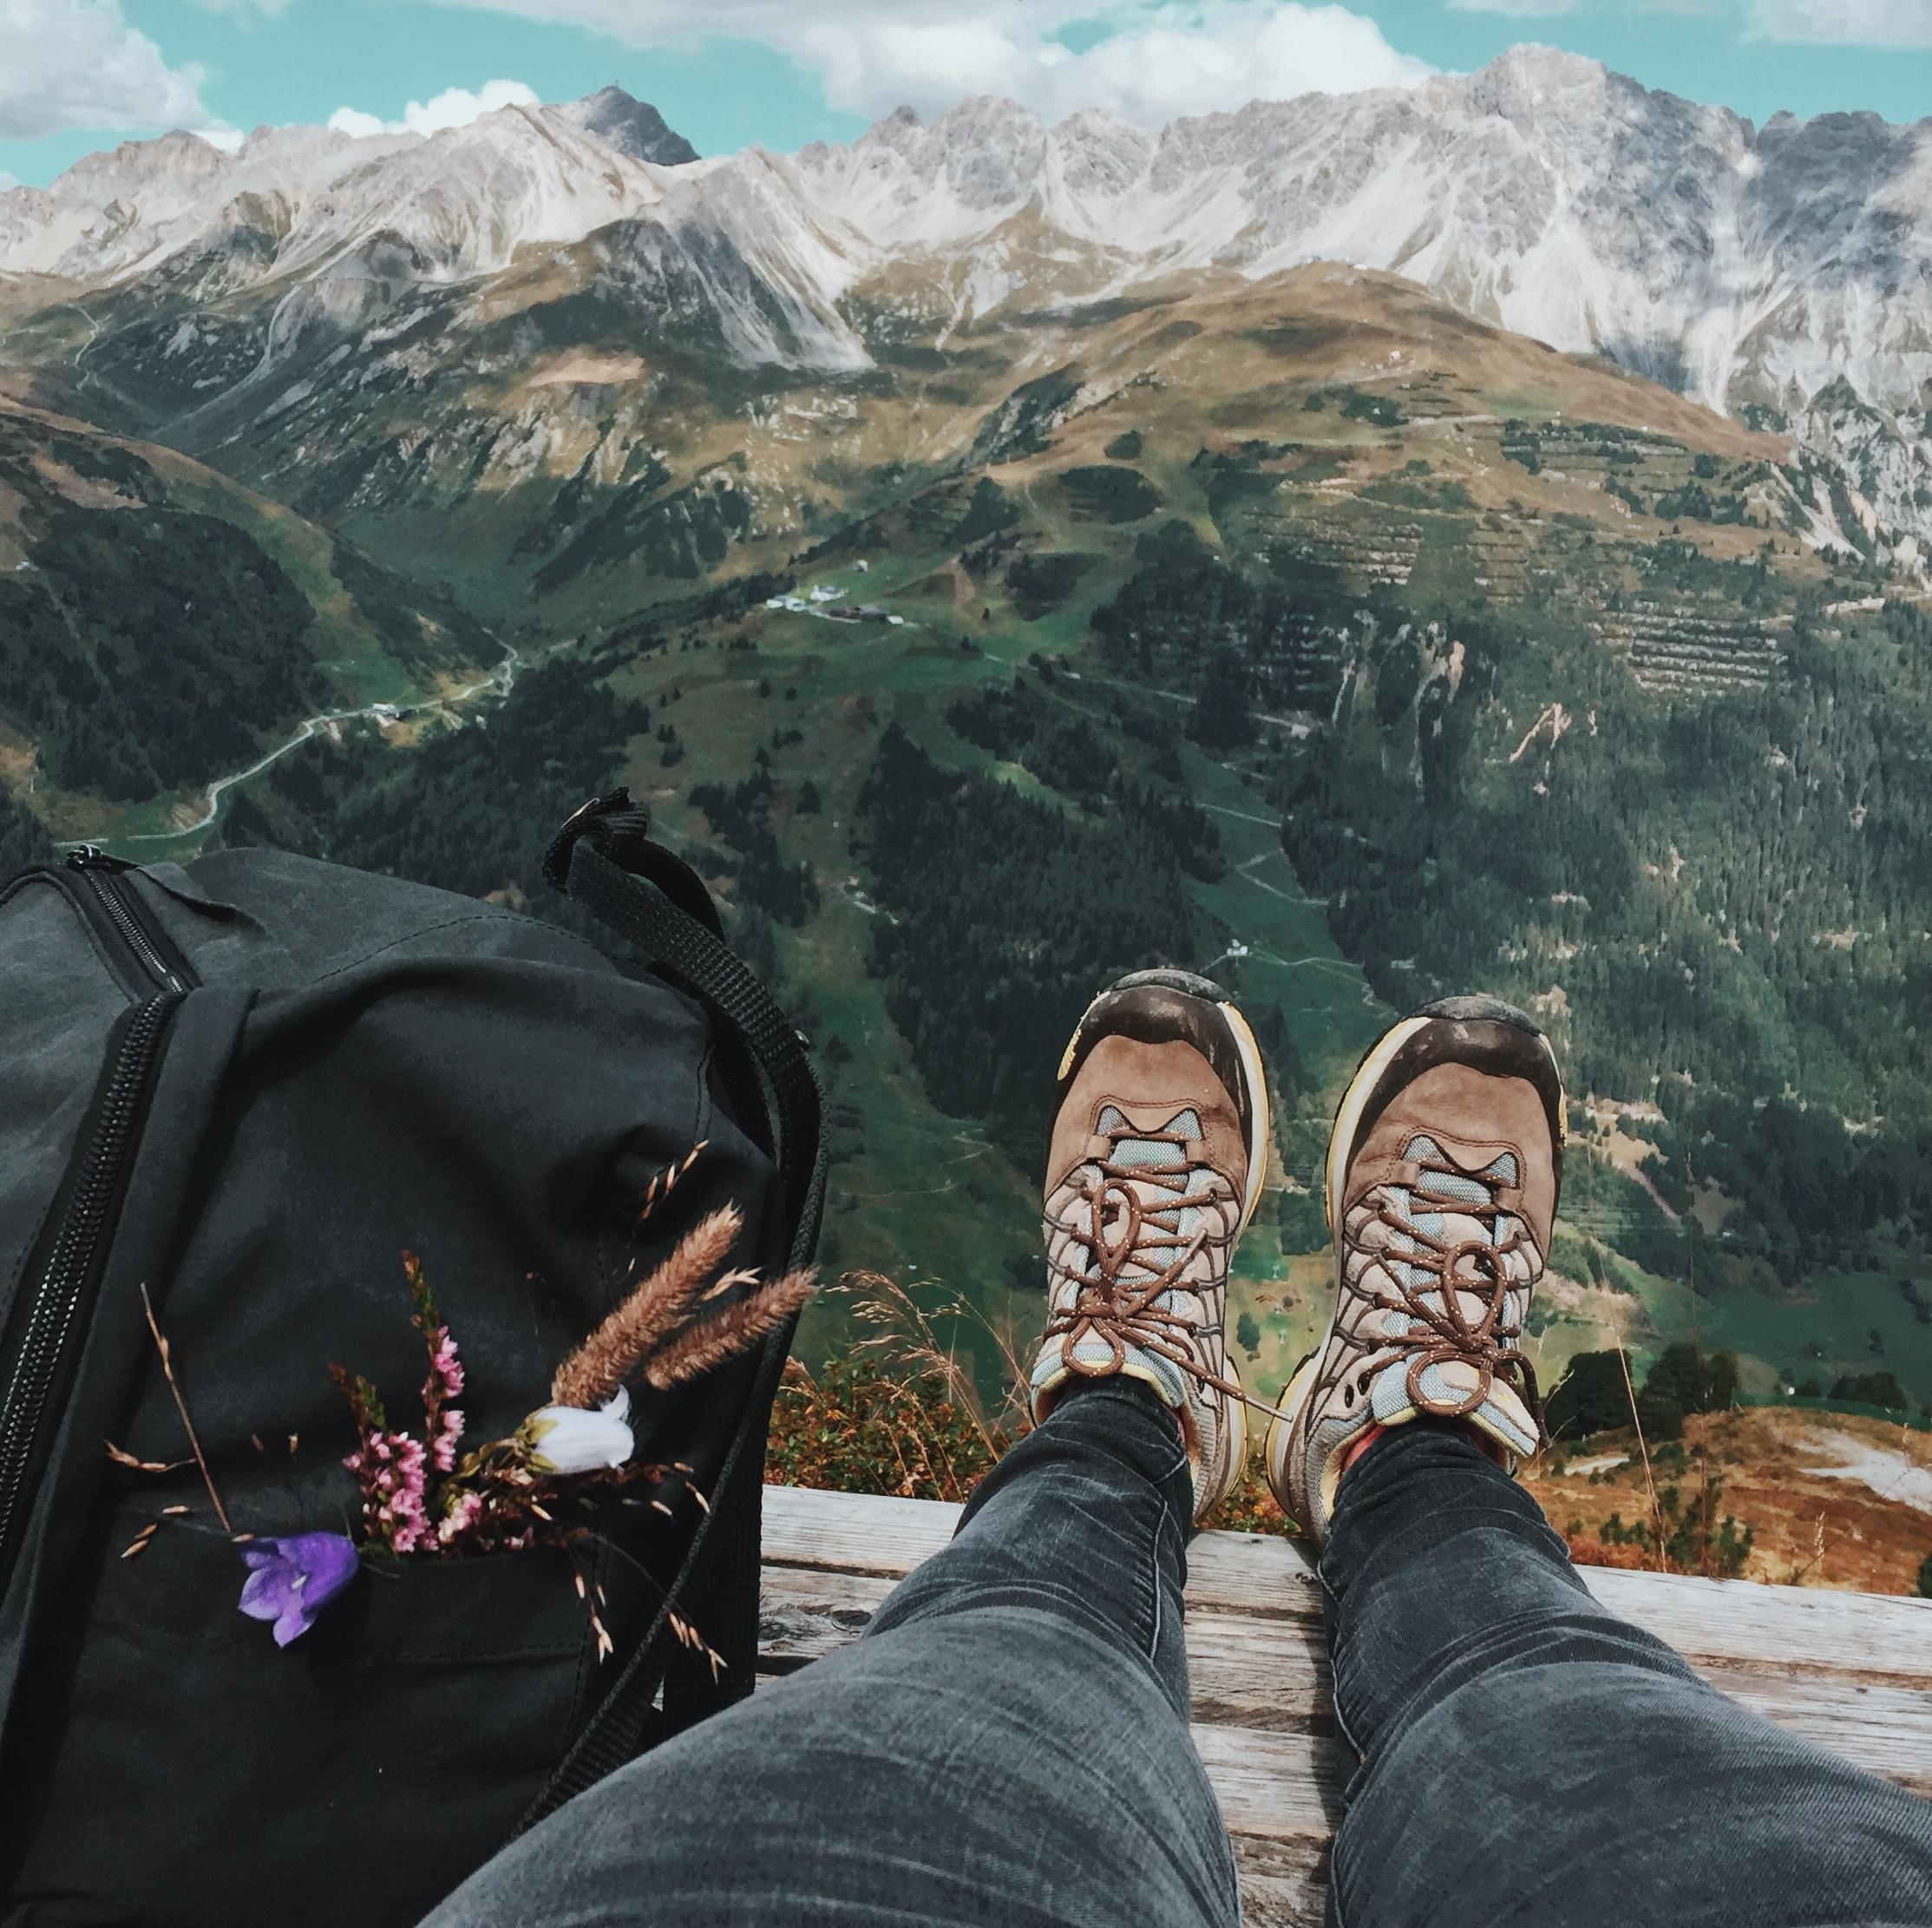 Pause machen und den Blick über die Berge genießen. #wandern in Österreich 💙
#travelchallenge 